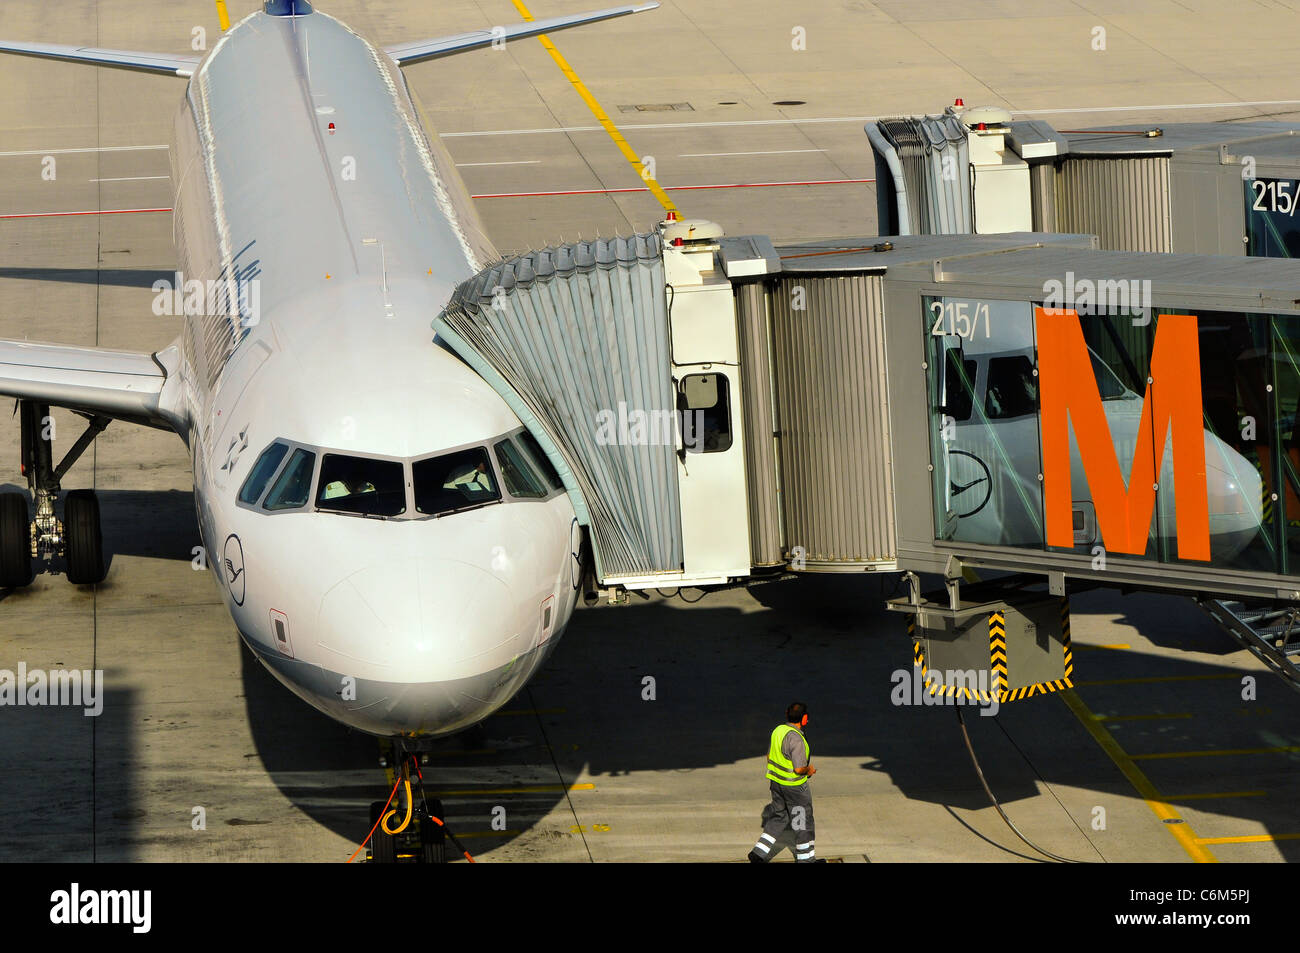 L'avion de Lufthansa à l'aéroport de Munich, Munich, Allemagne Banque D'Images